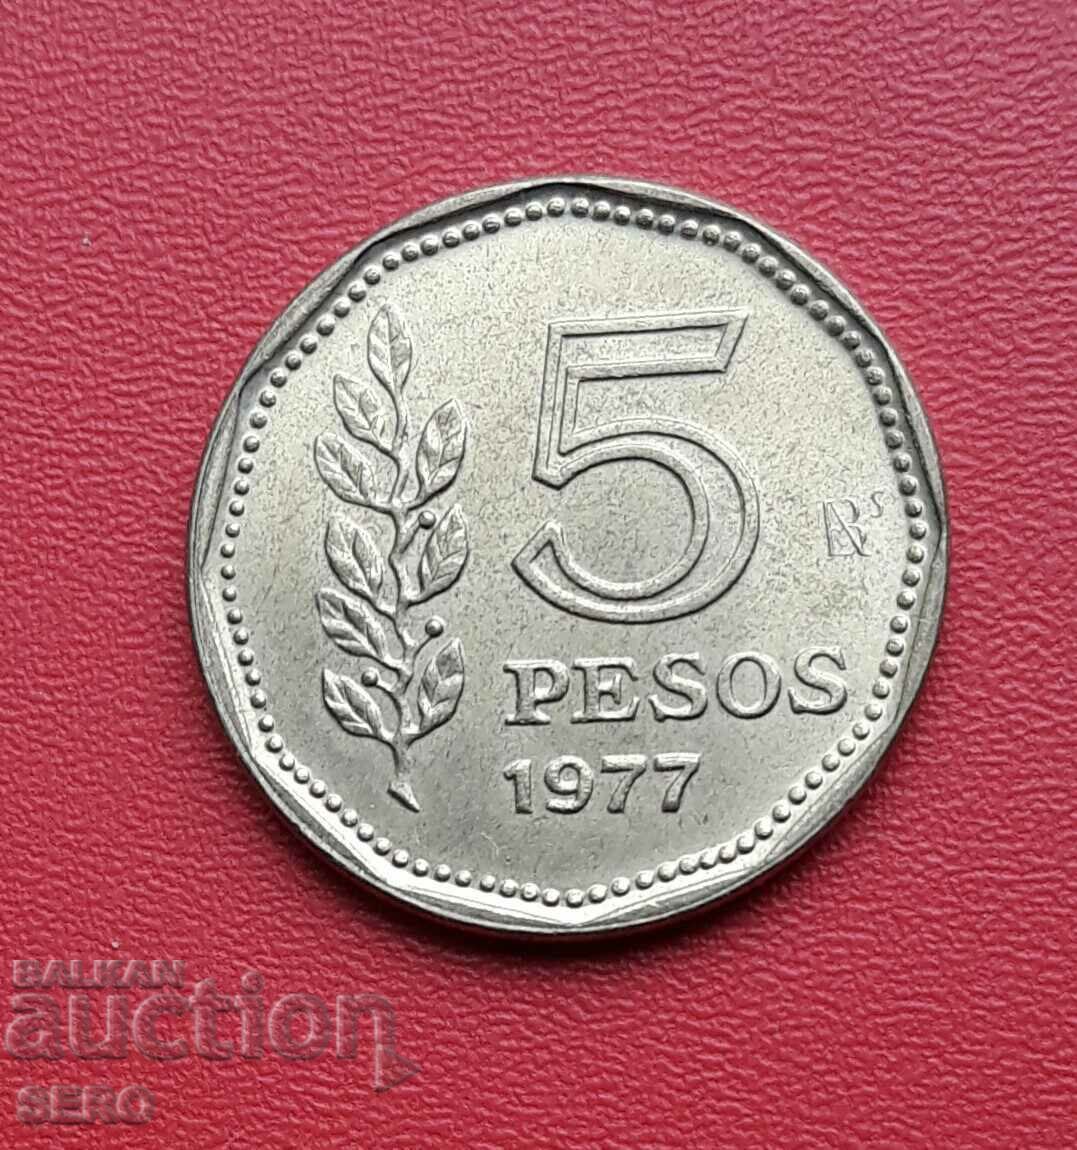 Argentina - 5 pesos 1977